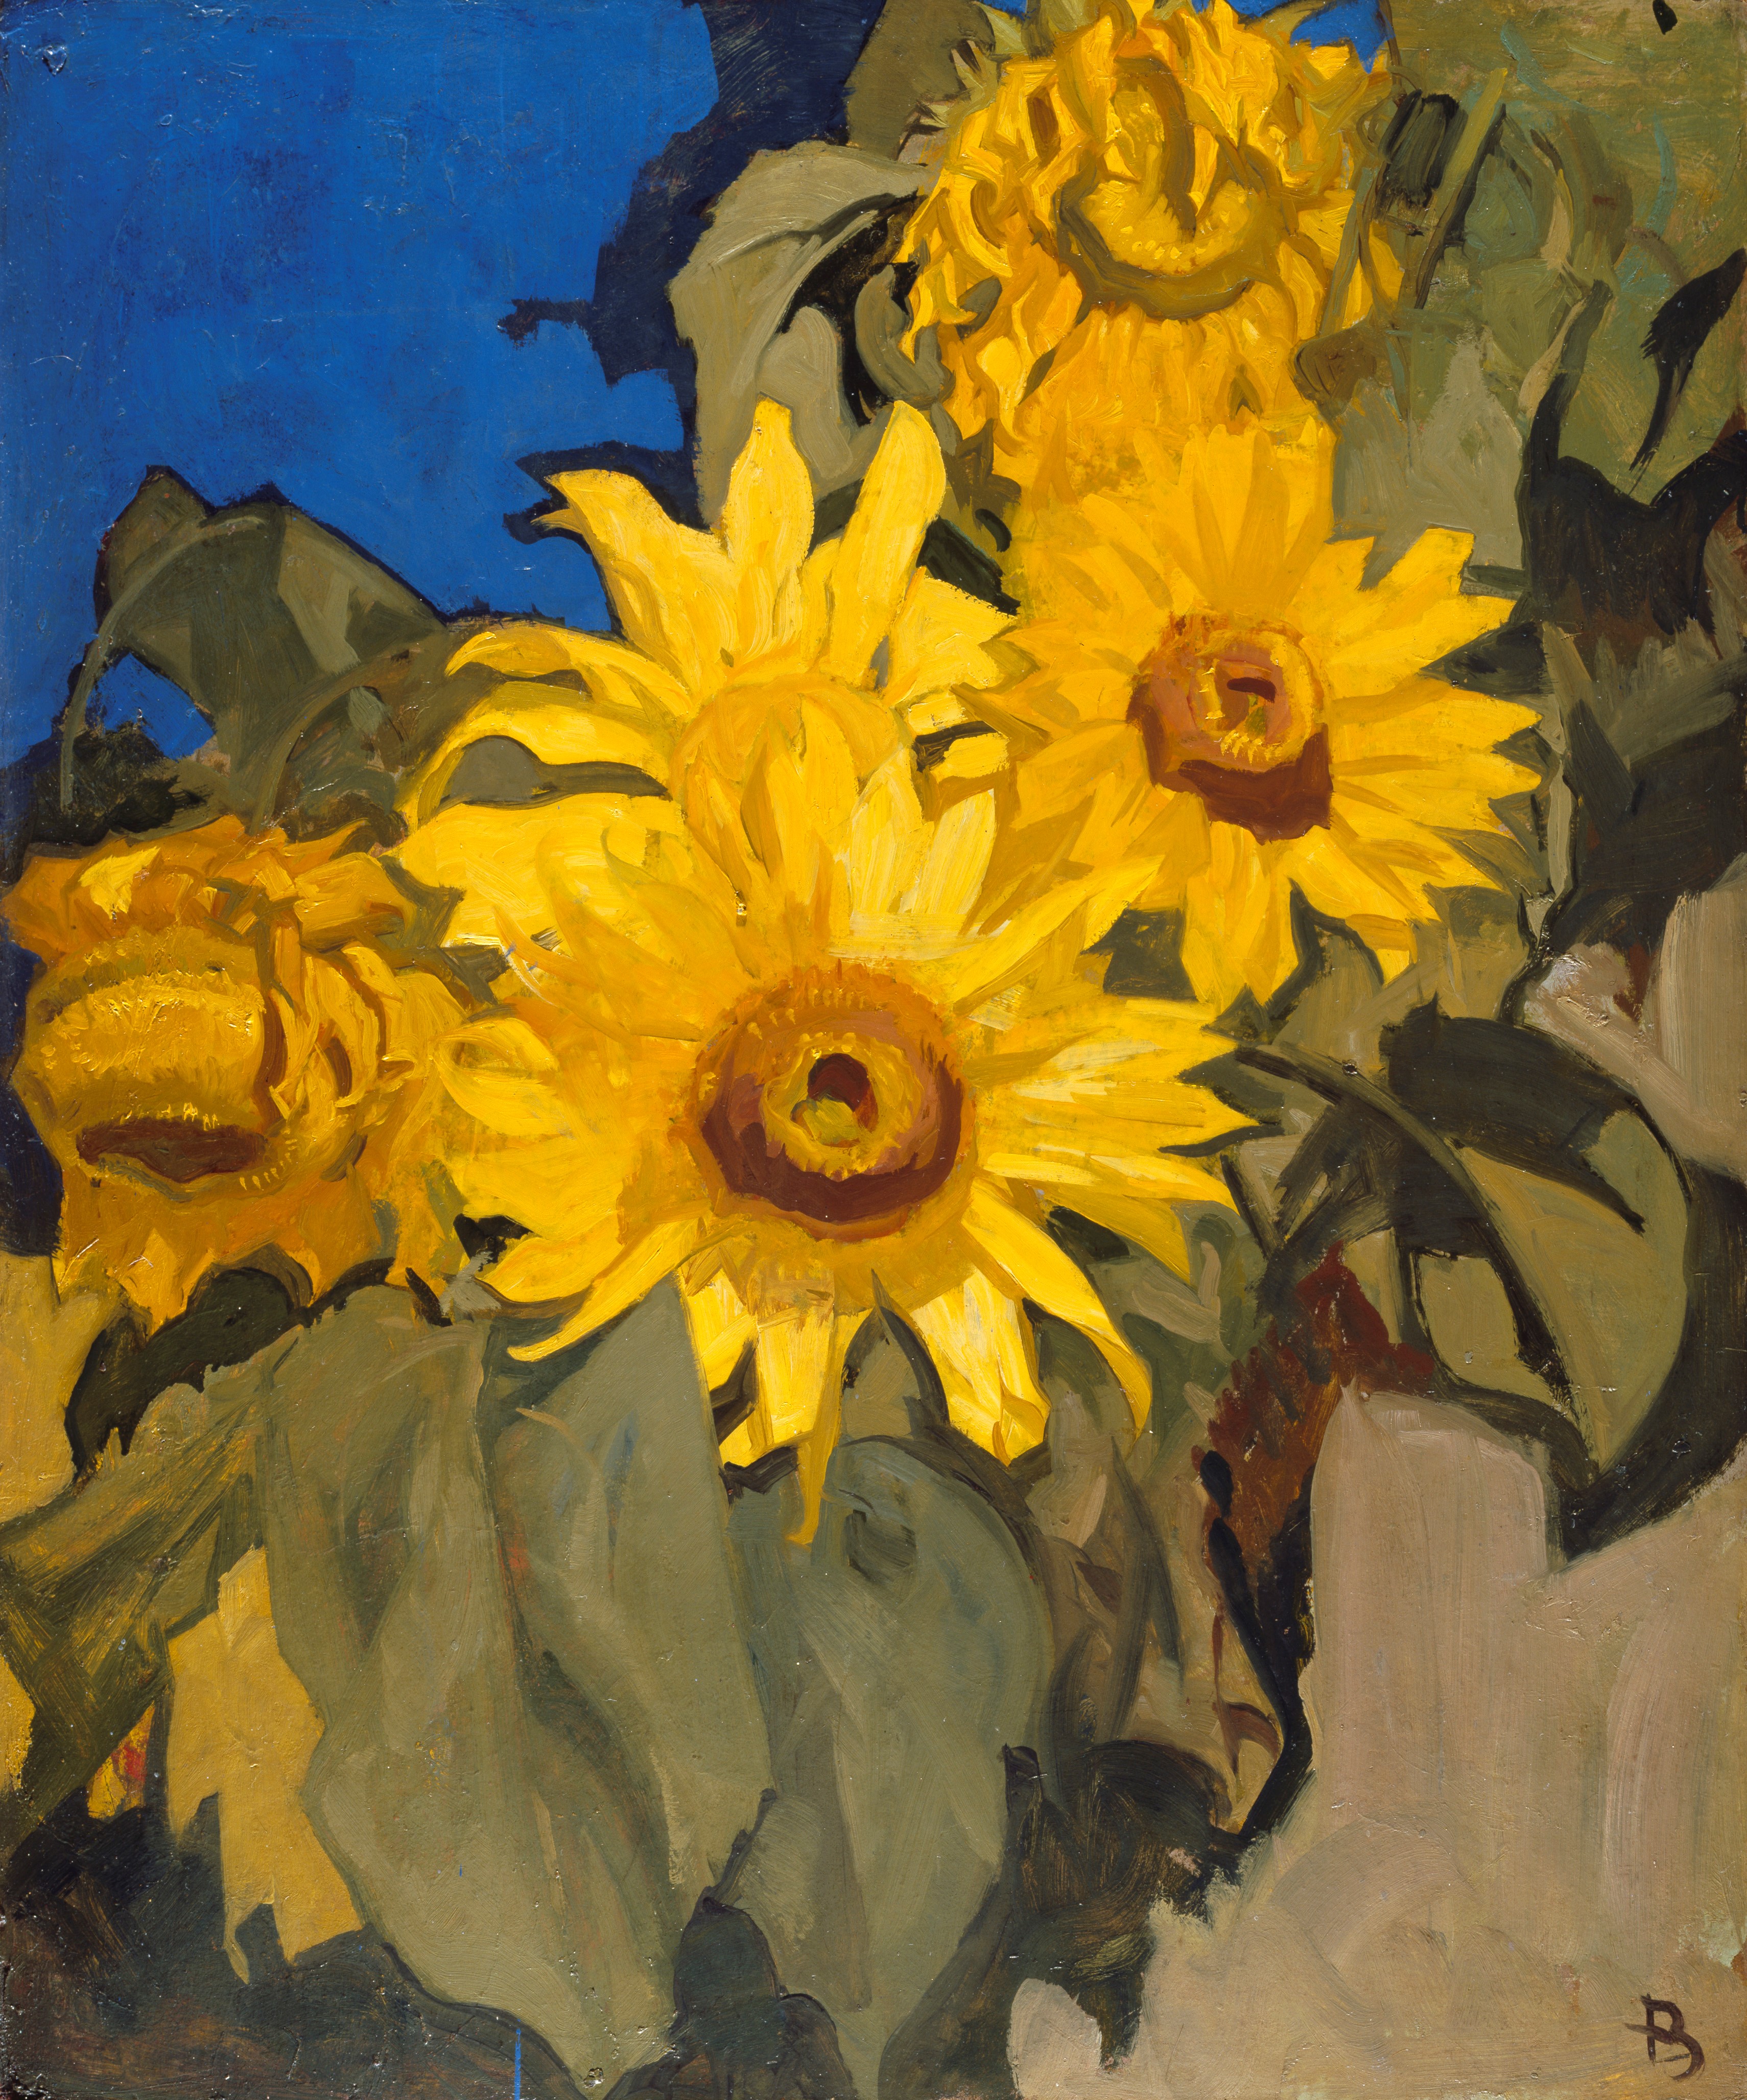 Frank Brangwyn's Sunflowers , 1867 –1956